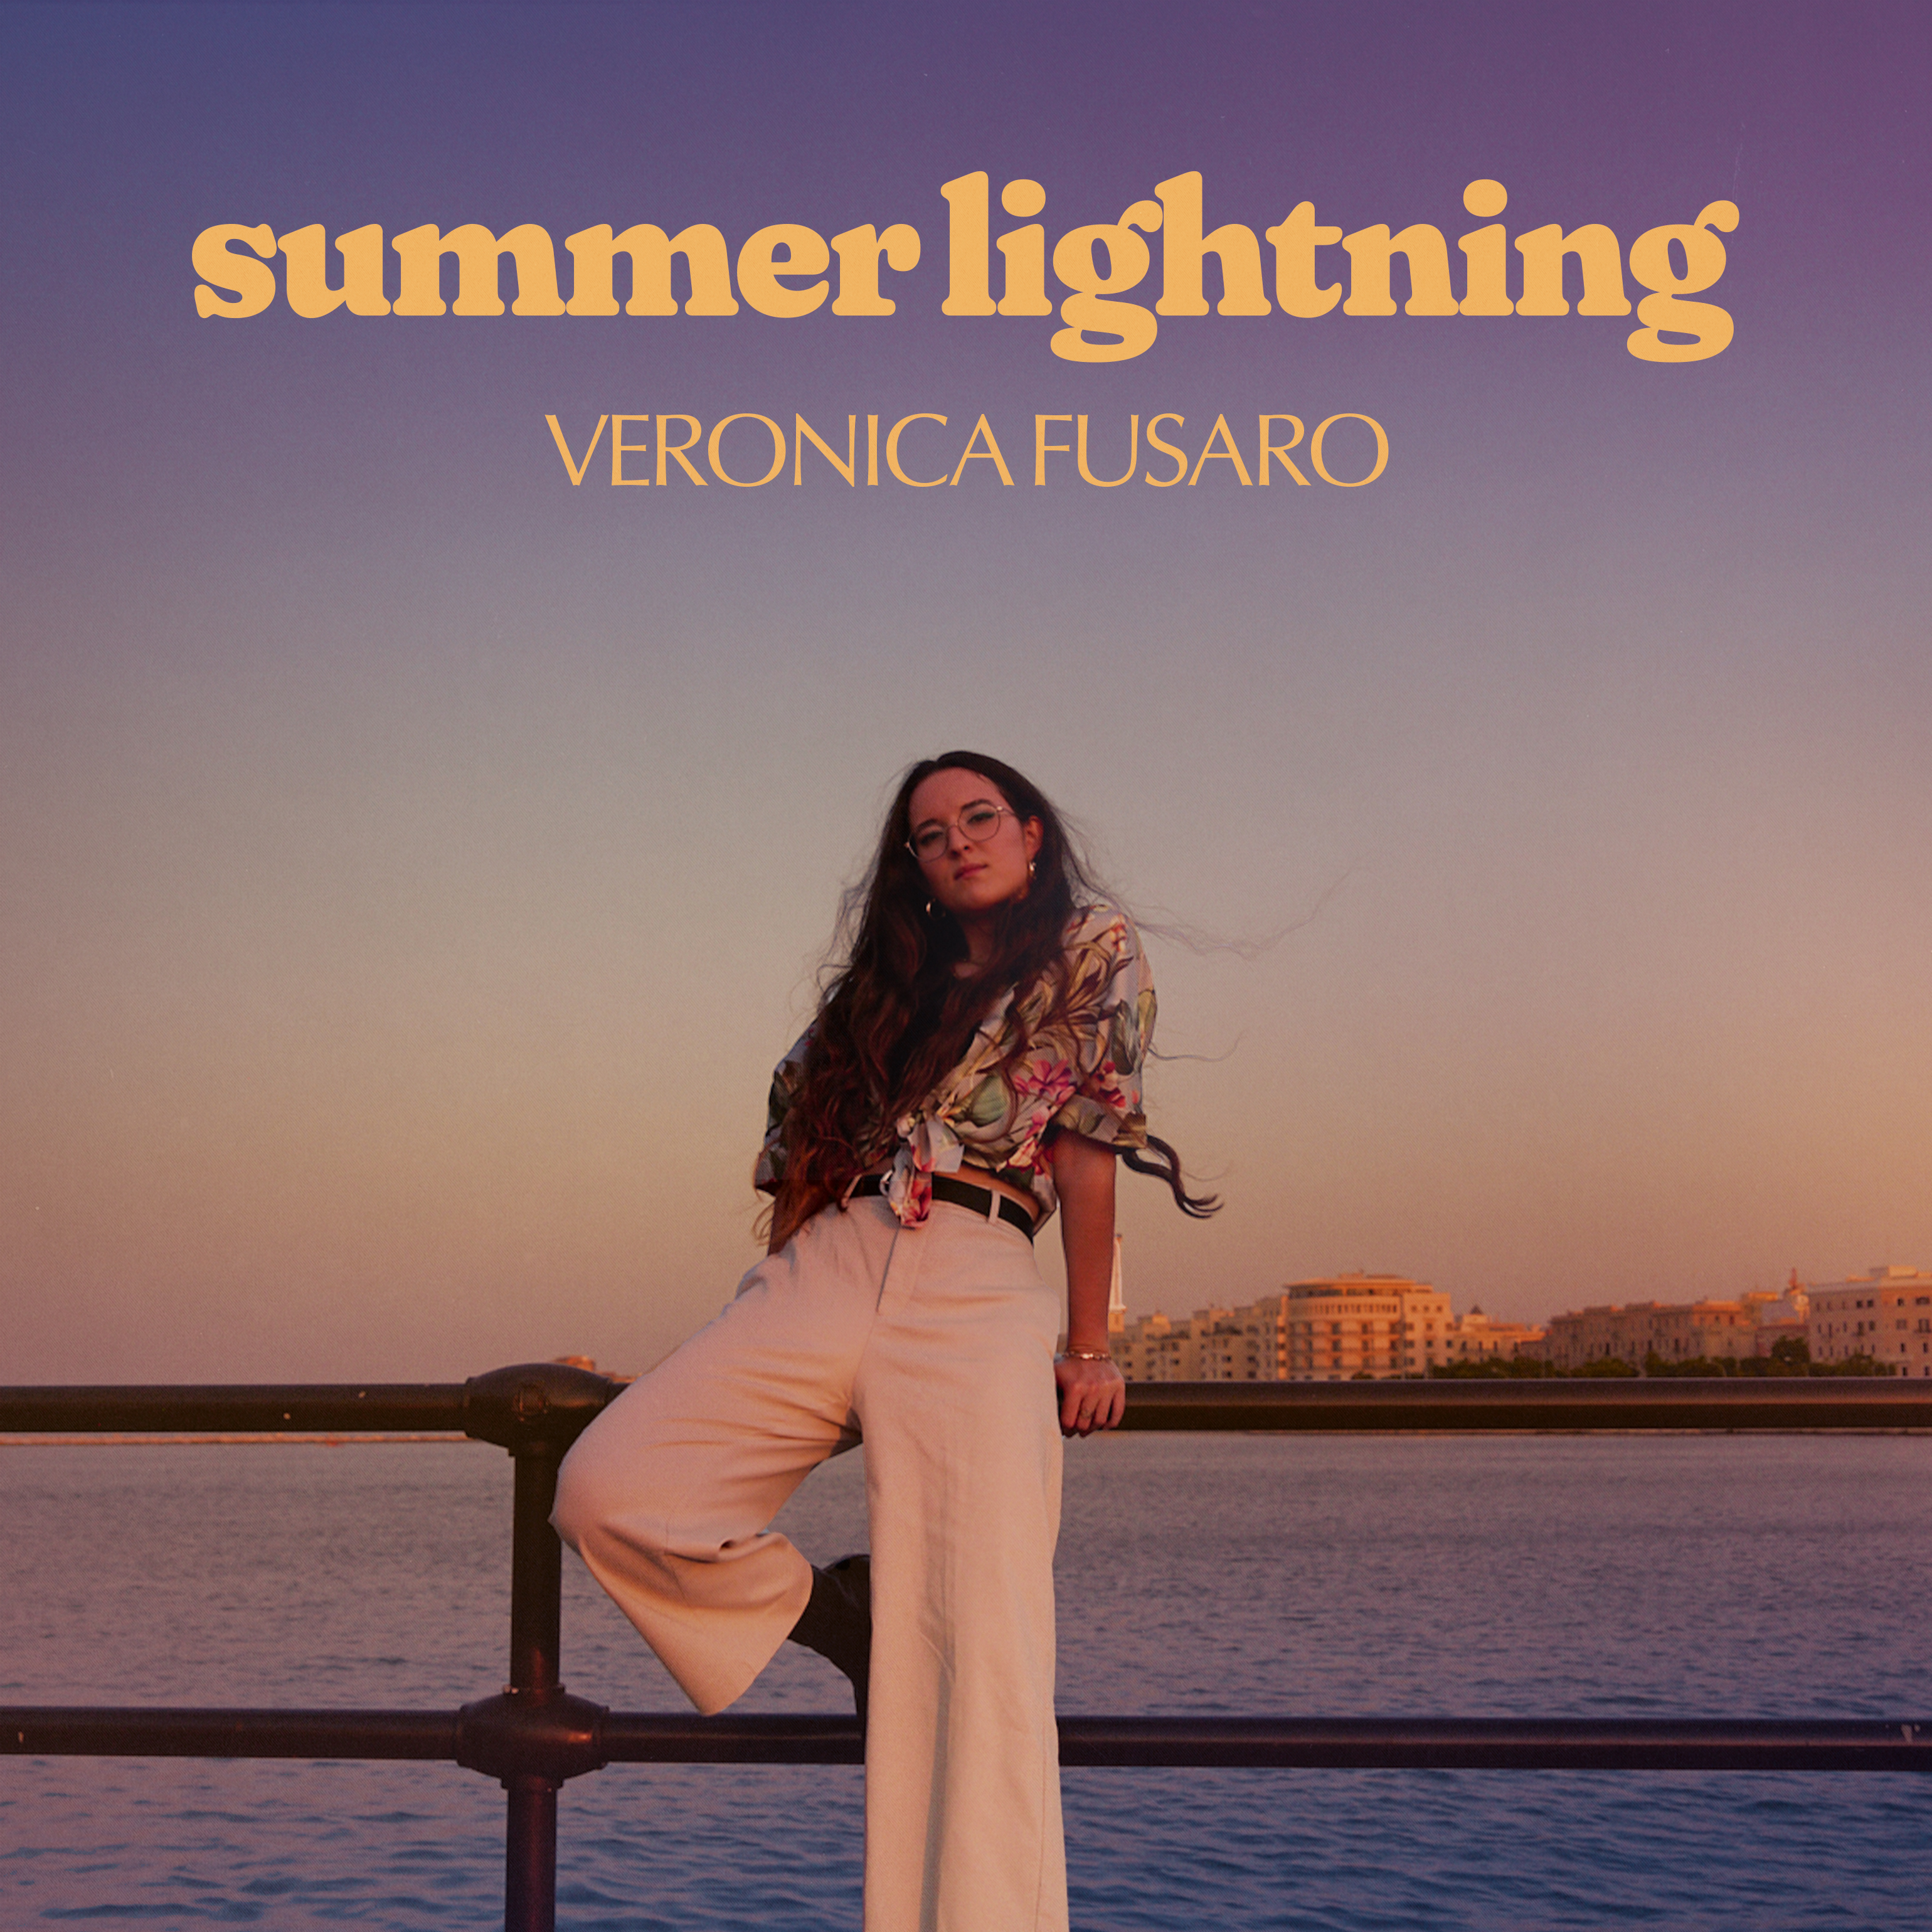 Veronica Fusaro - Summer Lightning 커버.jpg